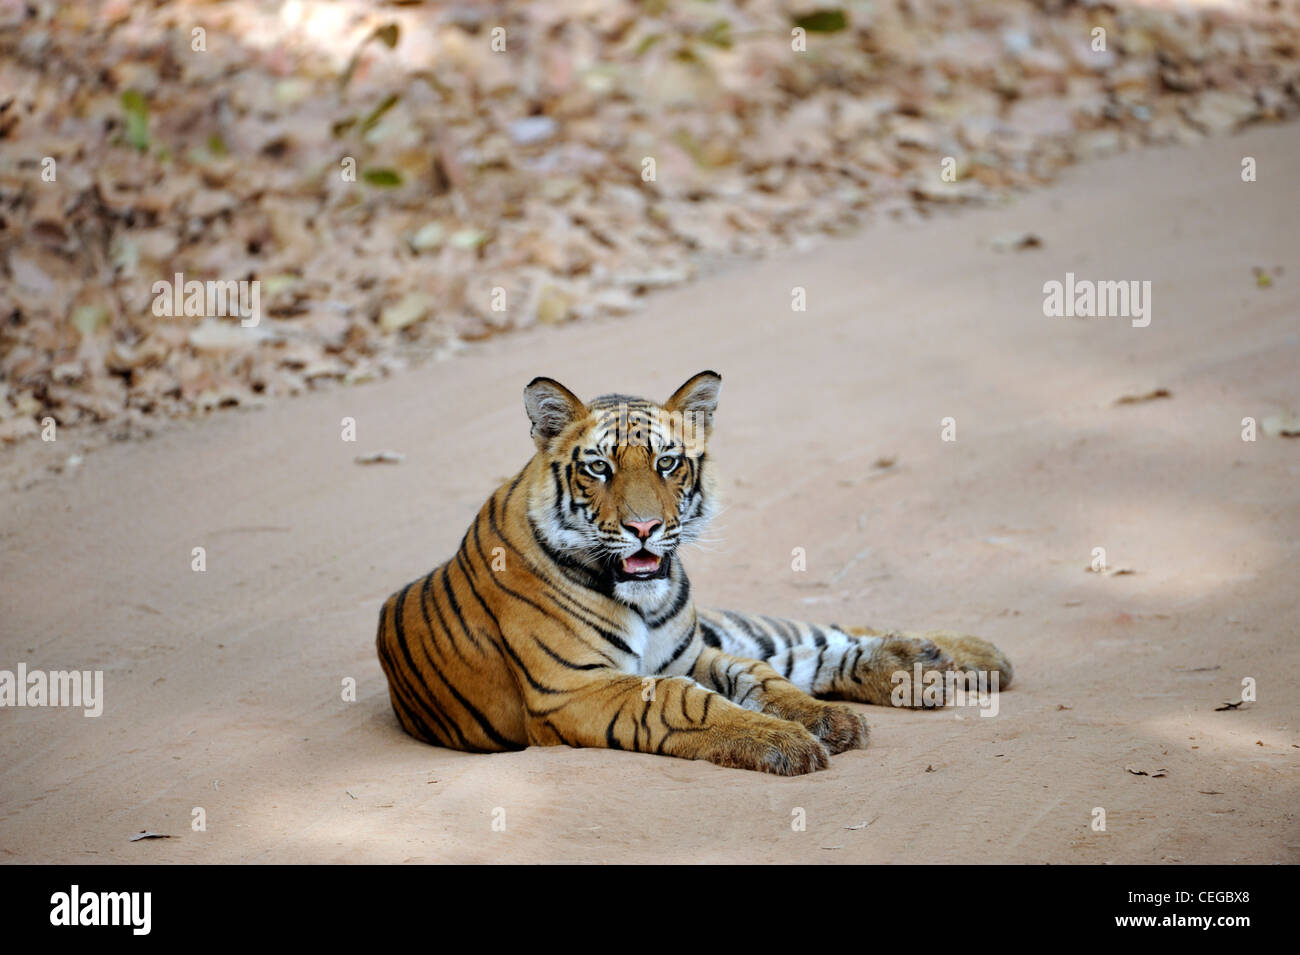 Bengal tiger cub (Panthera tigris) in Bandhavgarh National Park, Madhya Pradesh, India Stock Photo